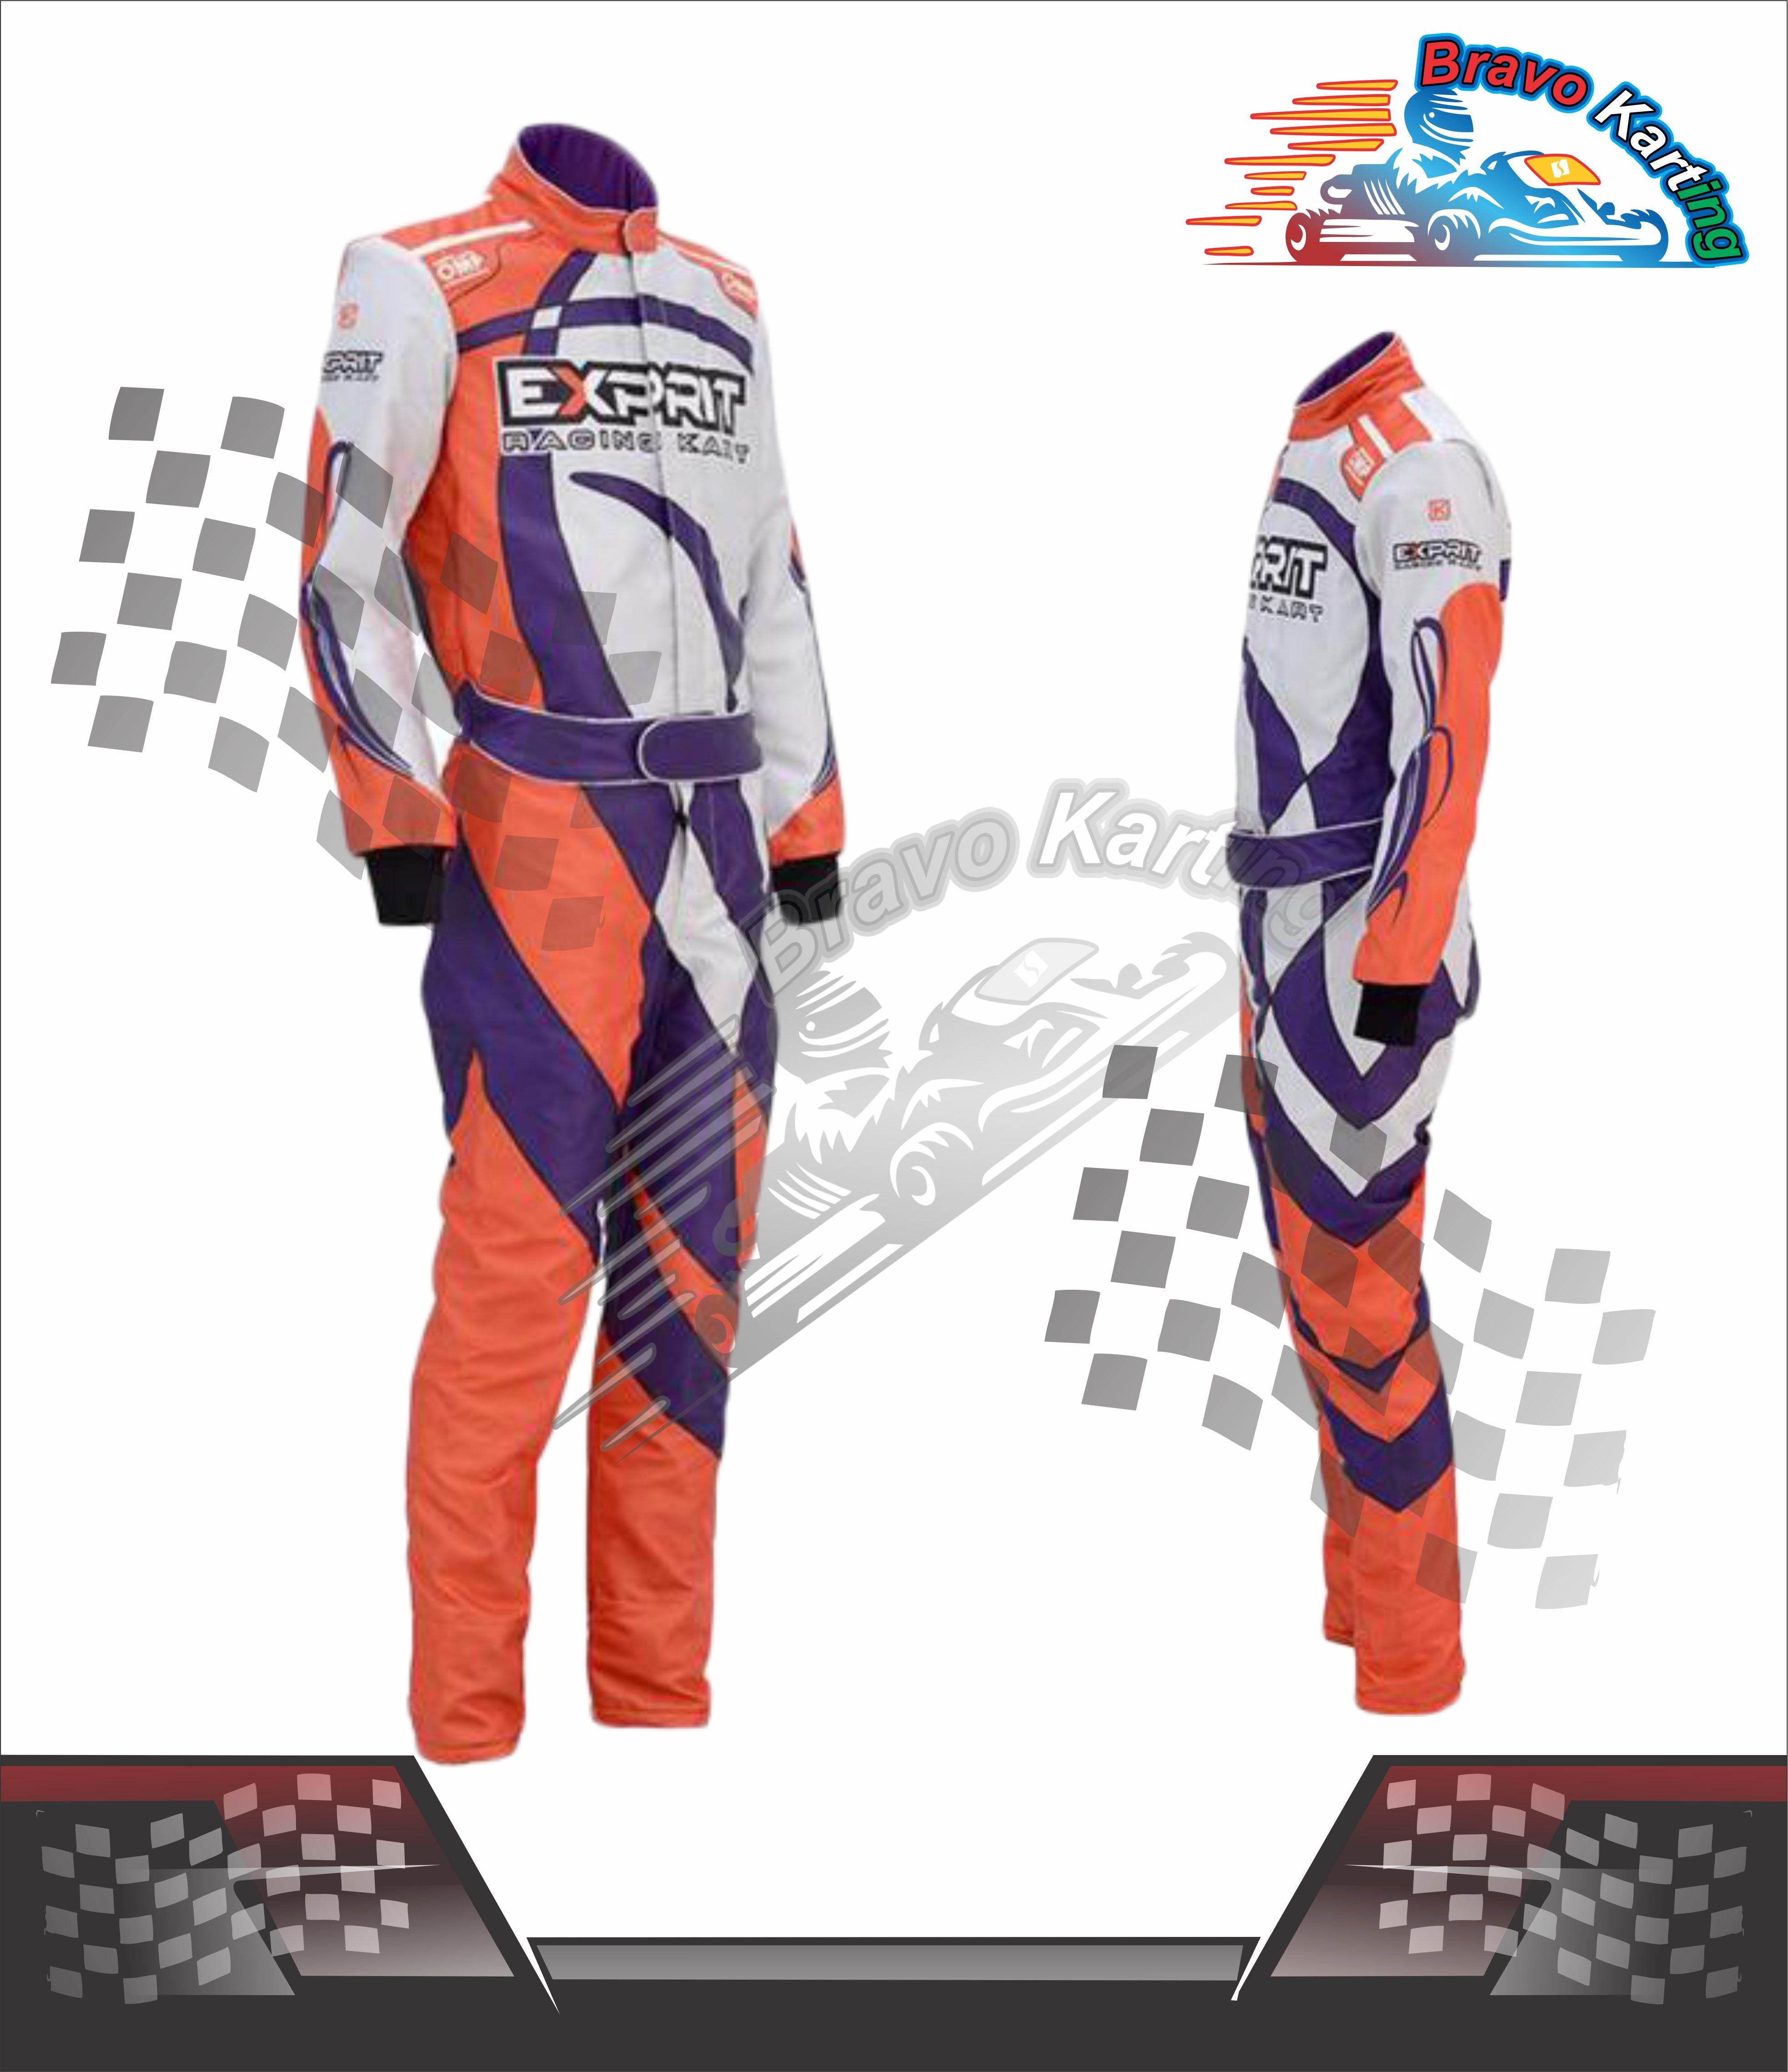 Exprit Racing Go Kart Race Suit